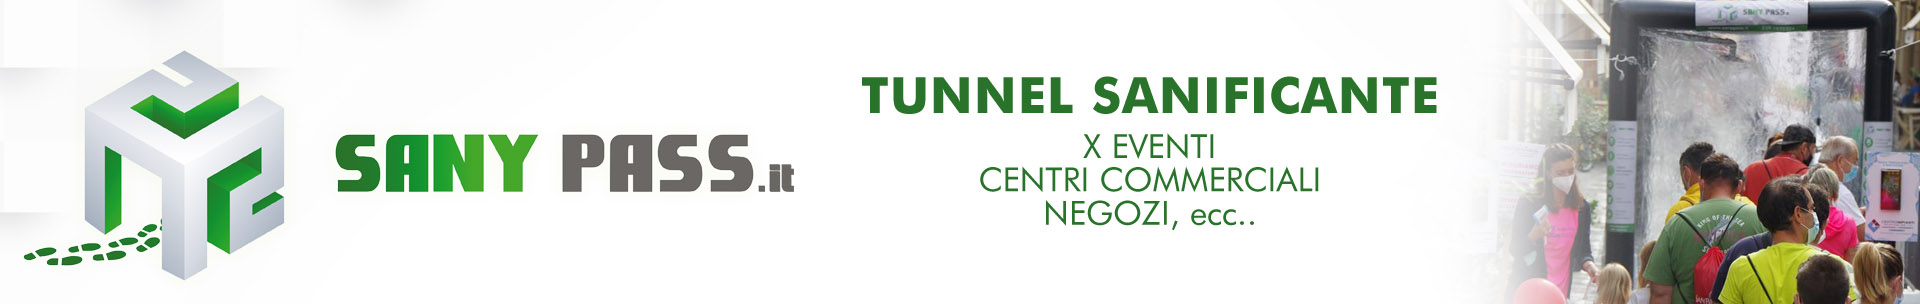 Tunnel sanificante per eventi, centri commerciali, negozi